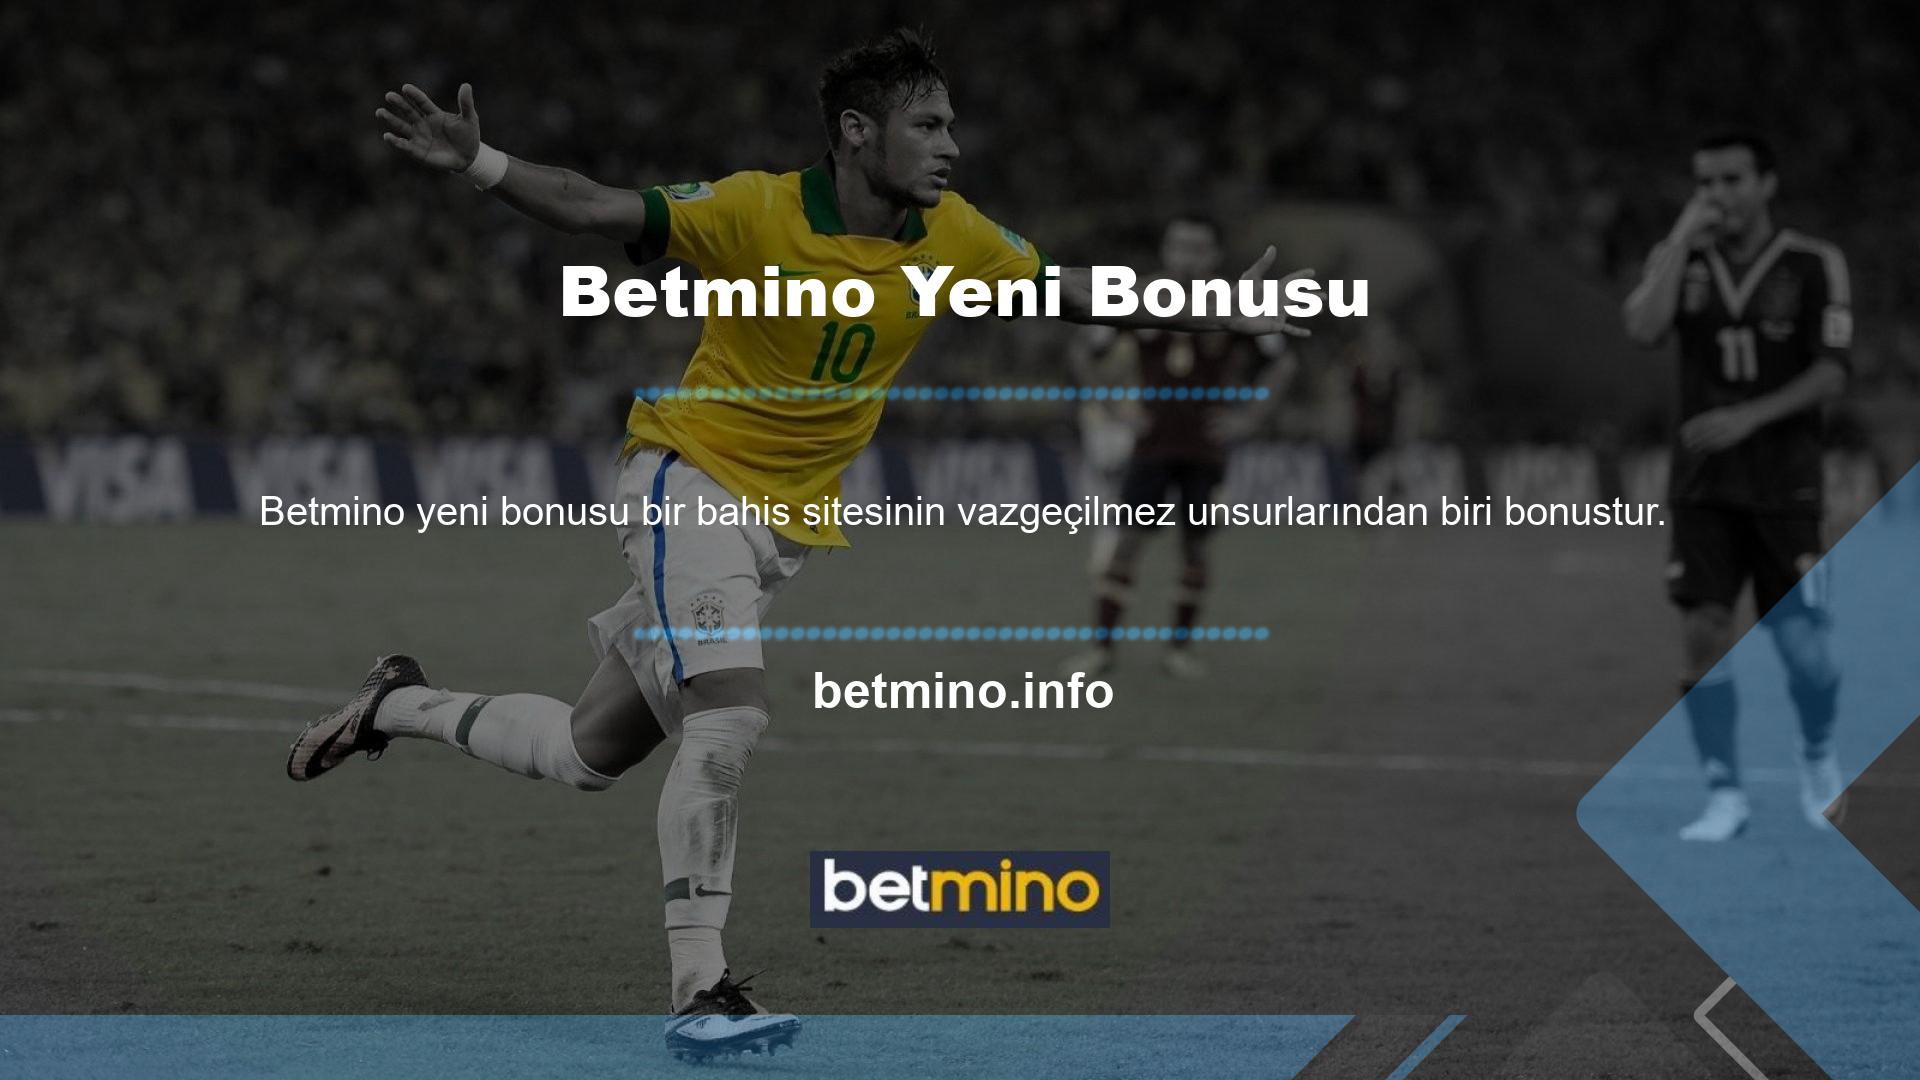 Betmino bonuslarına baktıktan sonra bu sitenin kaliteli bonuslara sahip olduğunu söylemek kolaydır